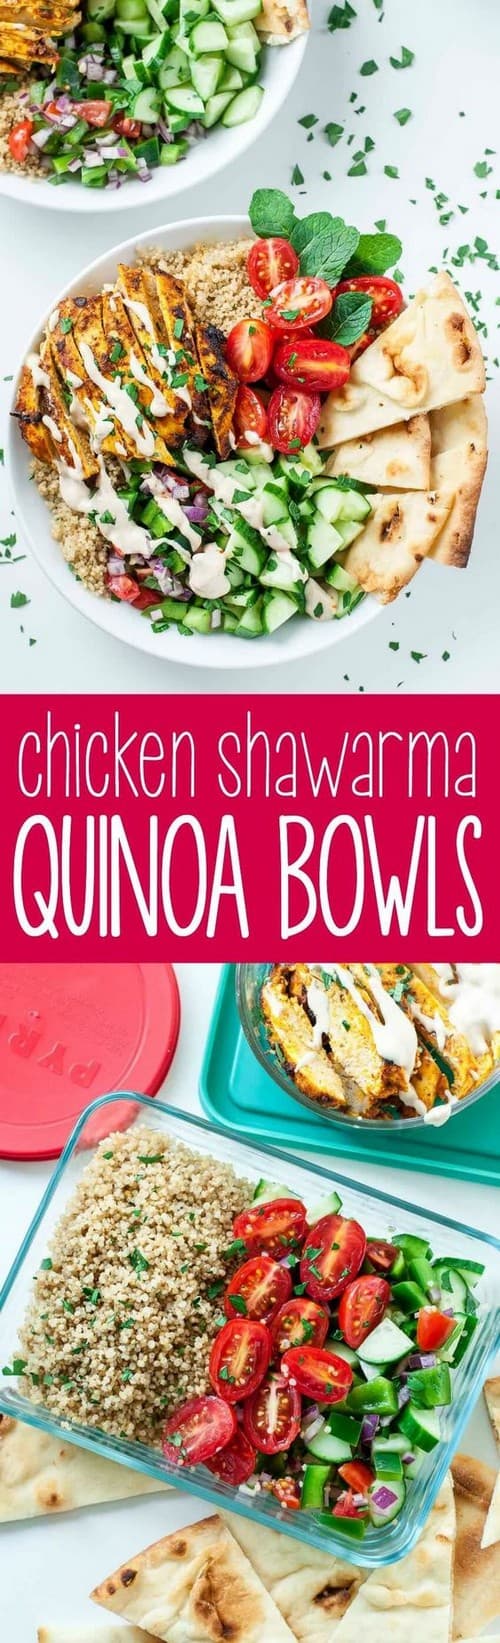 Mediterranean Healthy Chicken Shawarma Quinoa Bowls